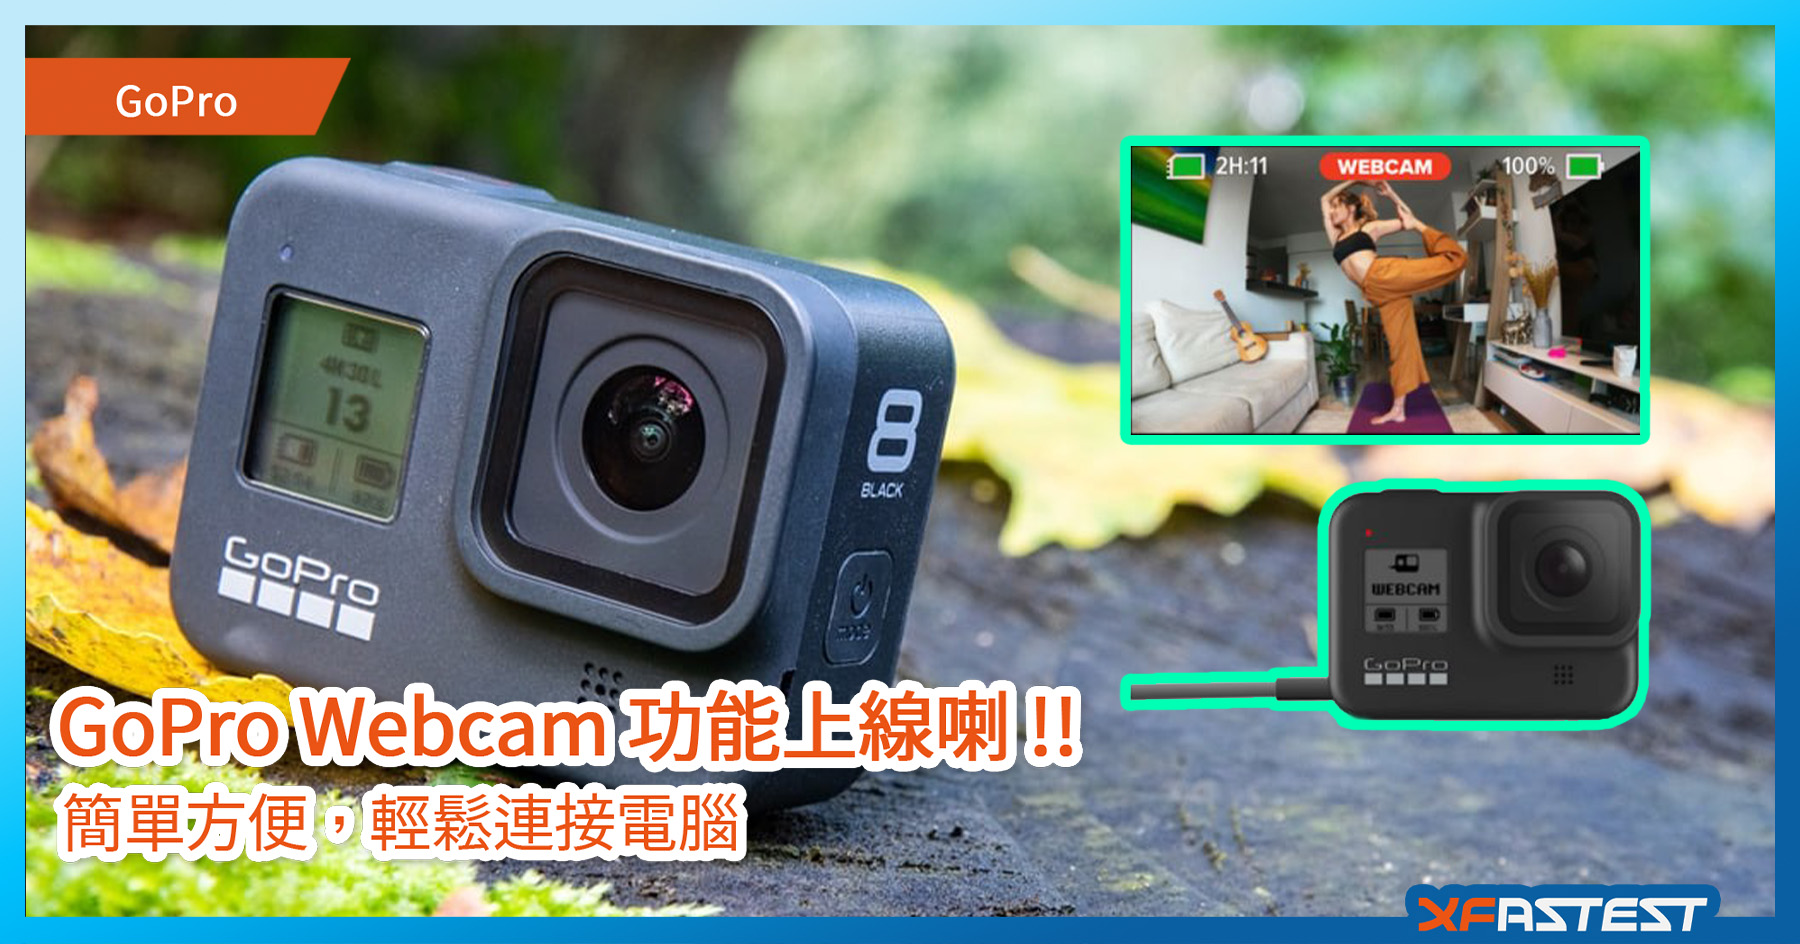 附下載連結 Gopro Webcam 功能上線喇 Google Meet Skype Discord 等熱門軟件皆支援 Xfastest Hong Kong